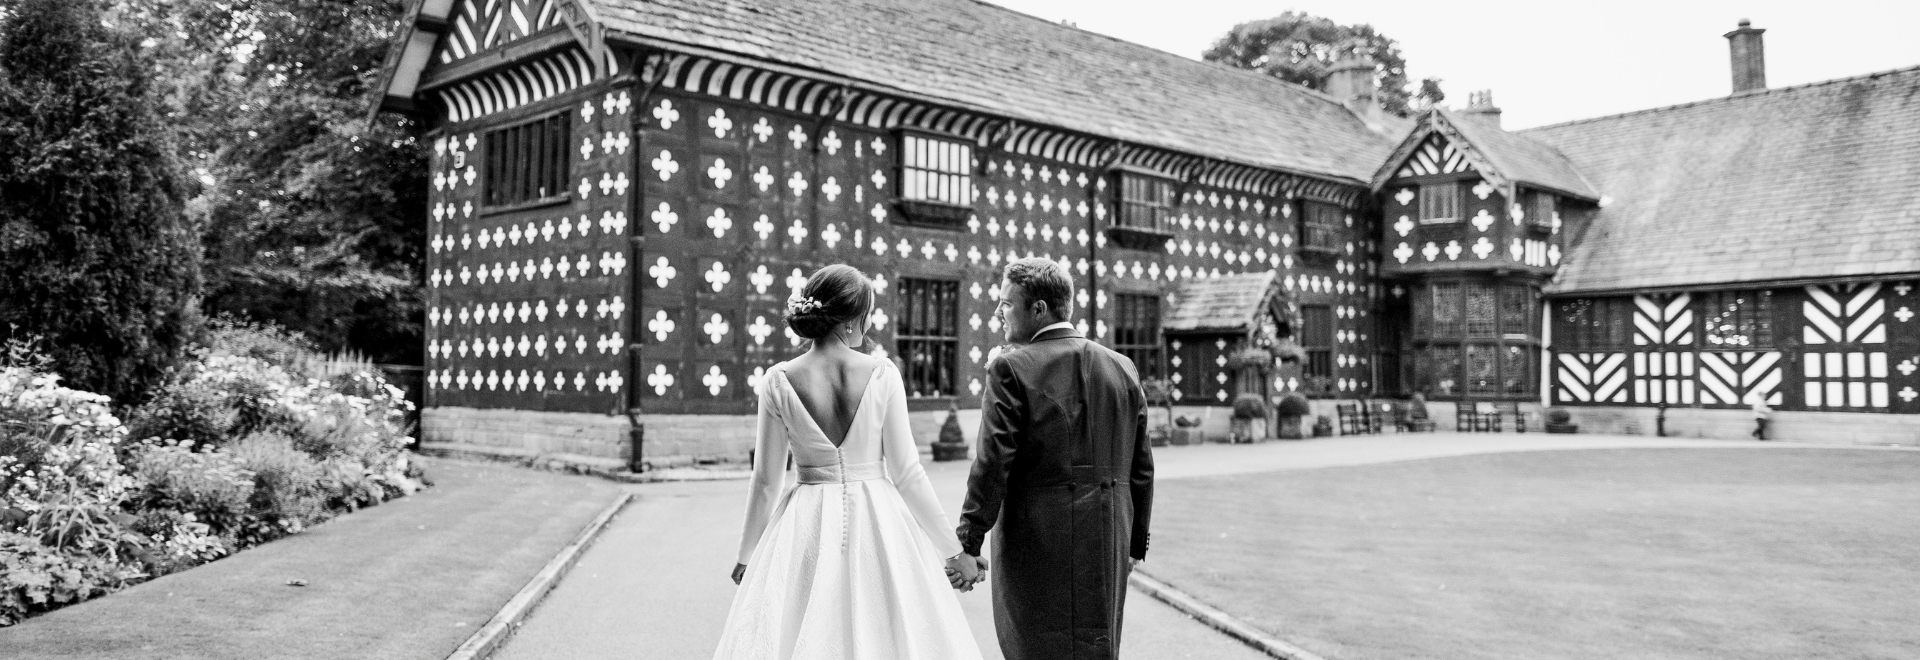 bride and groom at wedding venue in Lancashire 